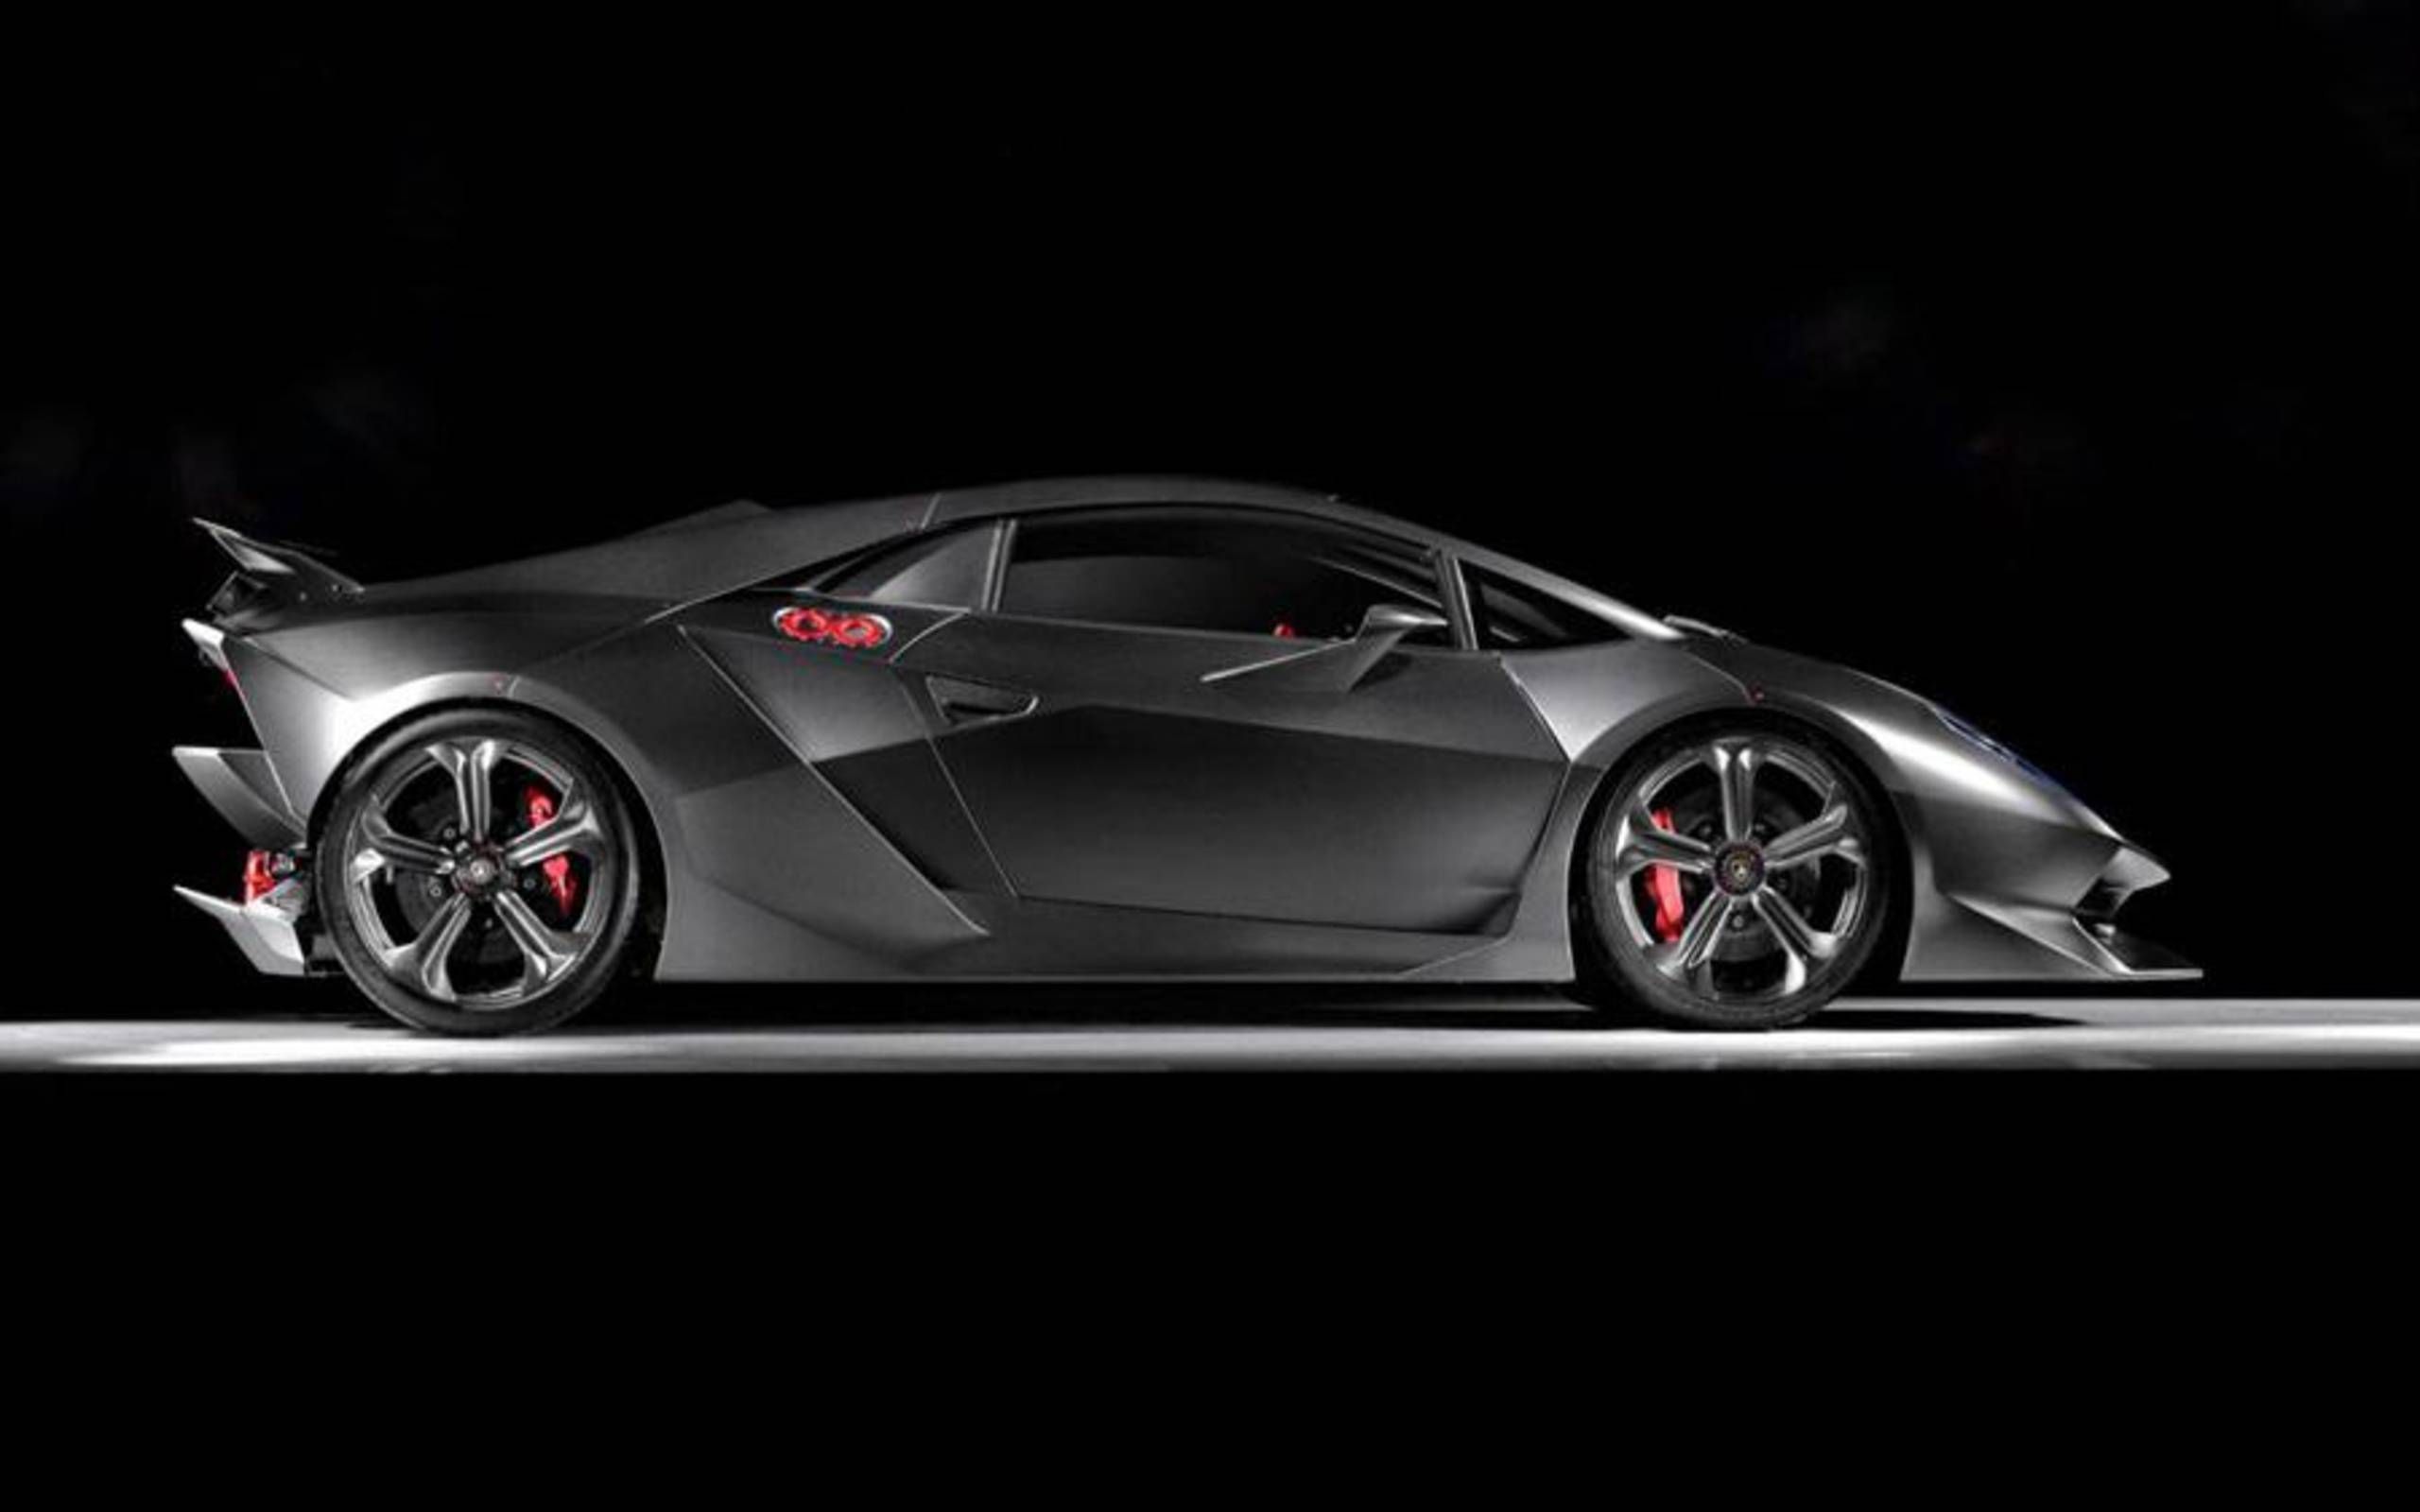 Watch: Lamborghini Sesto Elemento in action